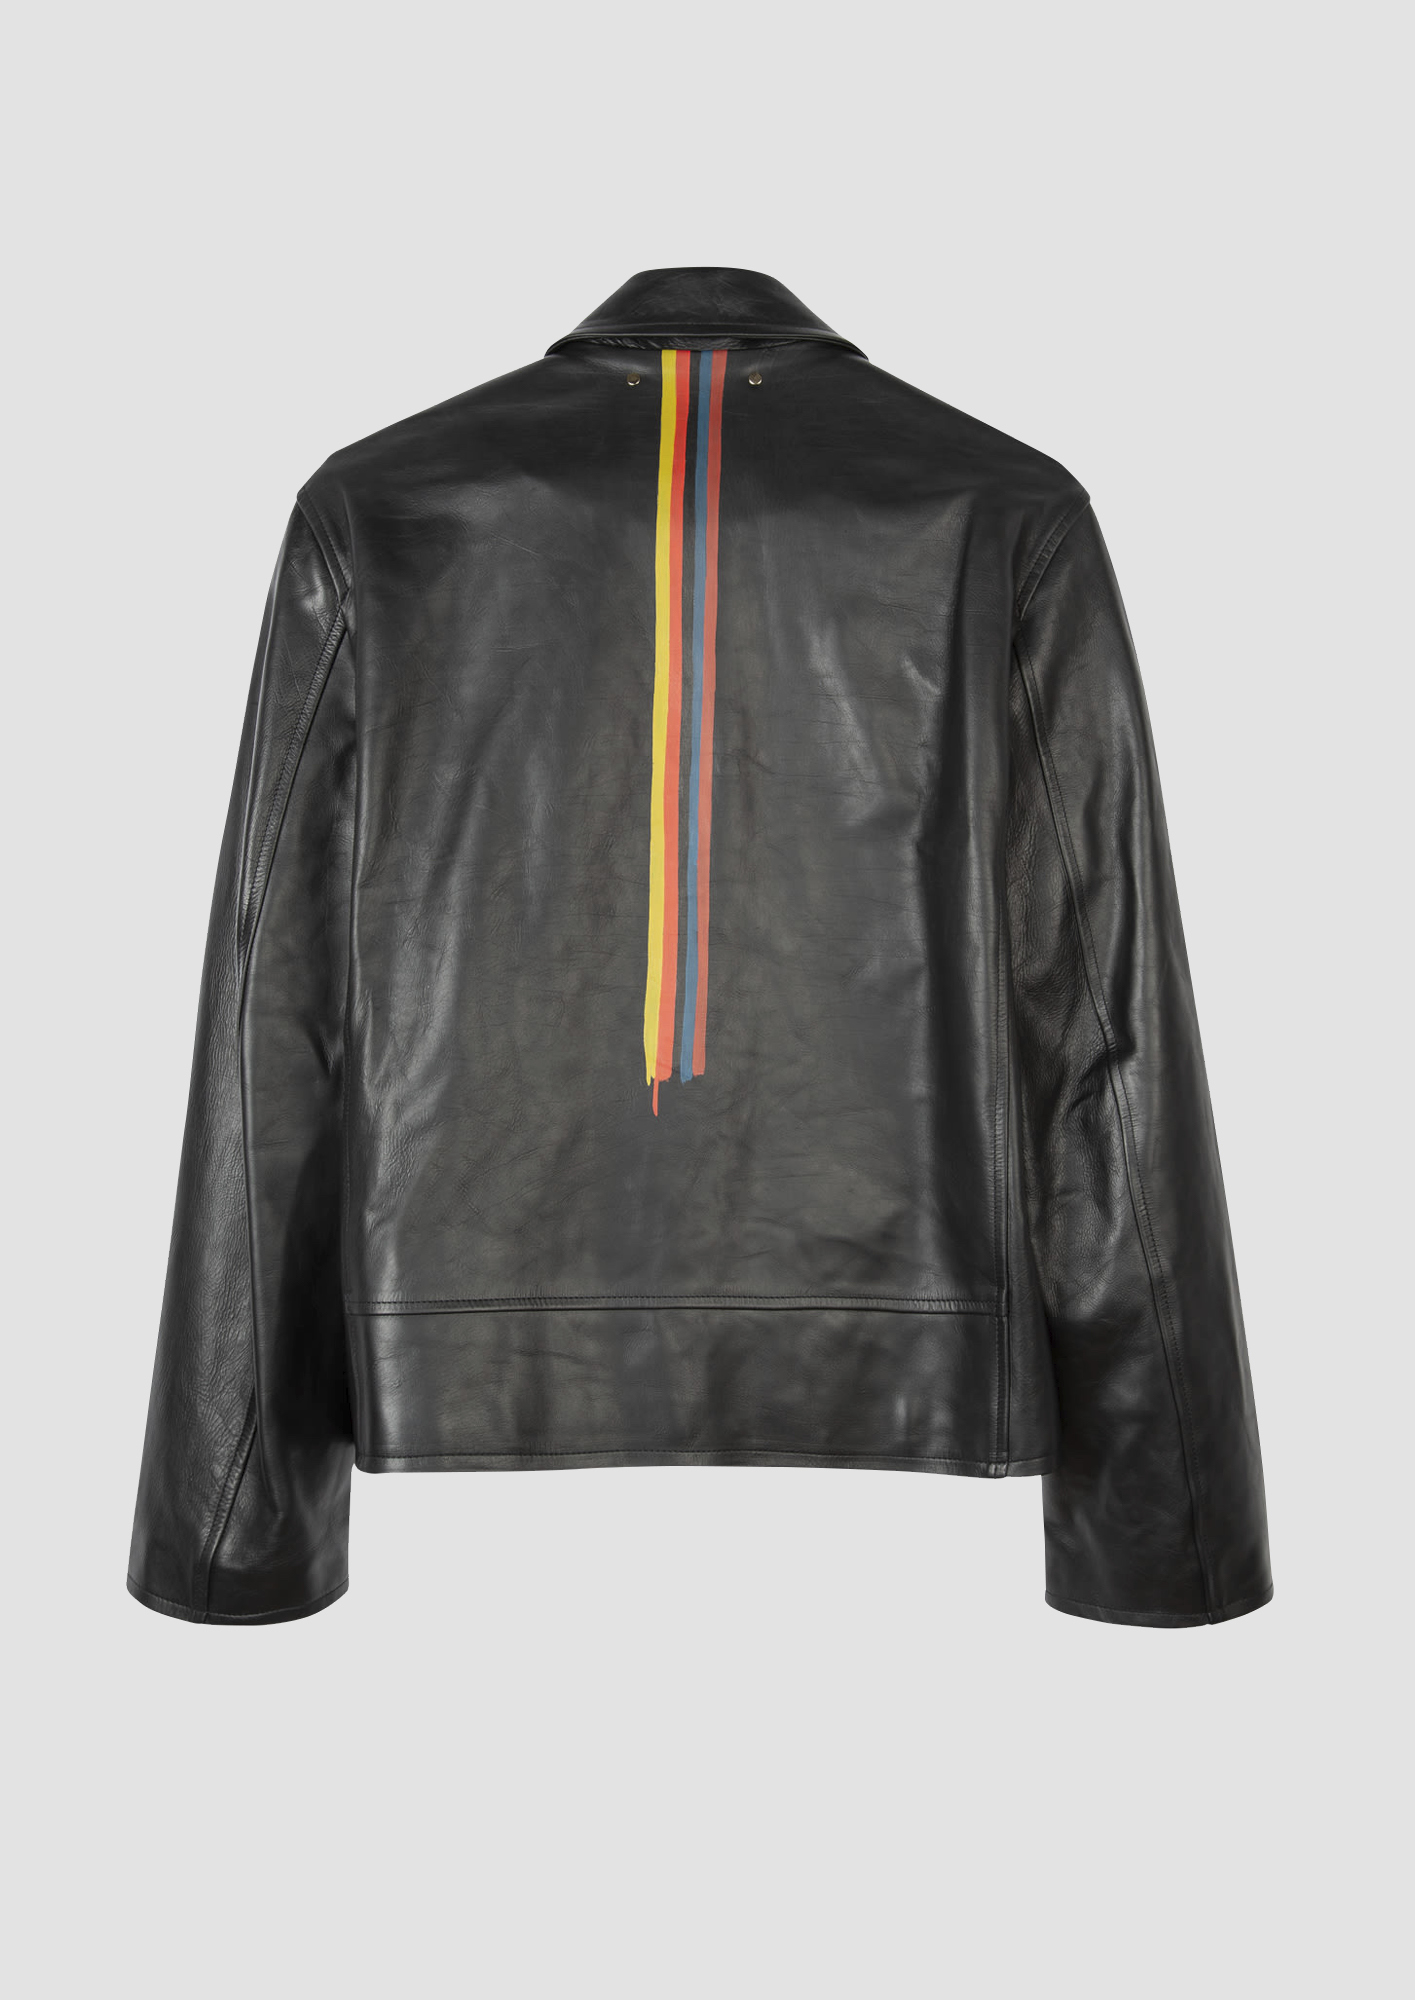 Paul Smith Artist Stripe biker jacket, £2,300